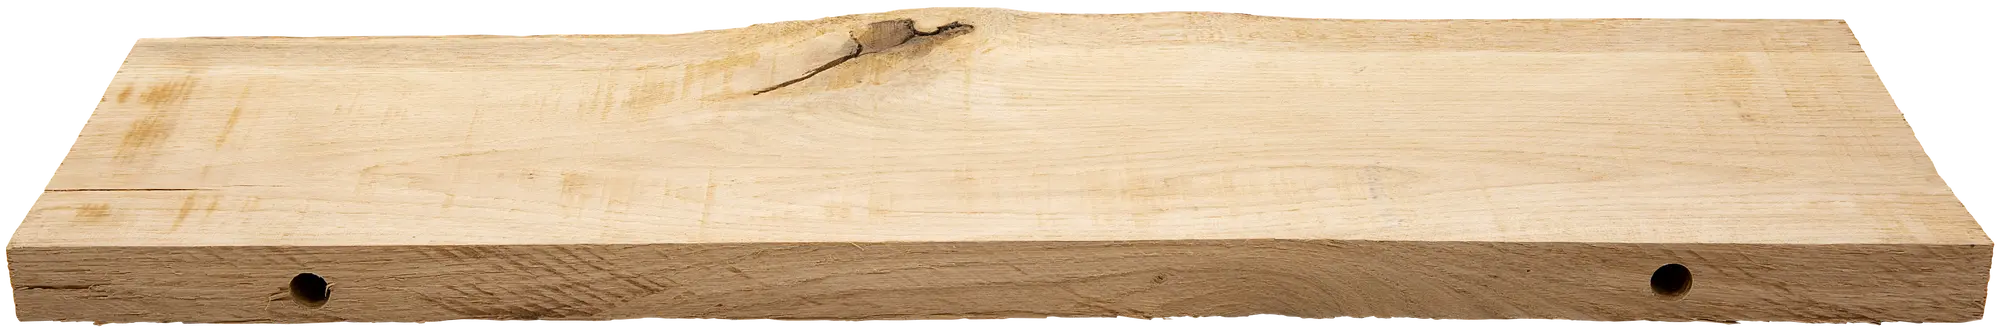 Estante roble macizo tarugo 18.5x60x3 cm